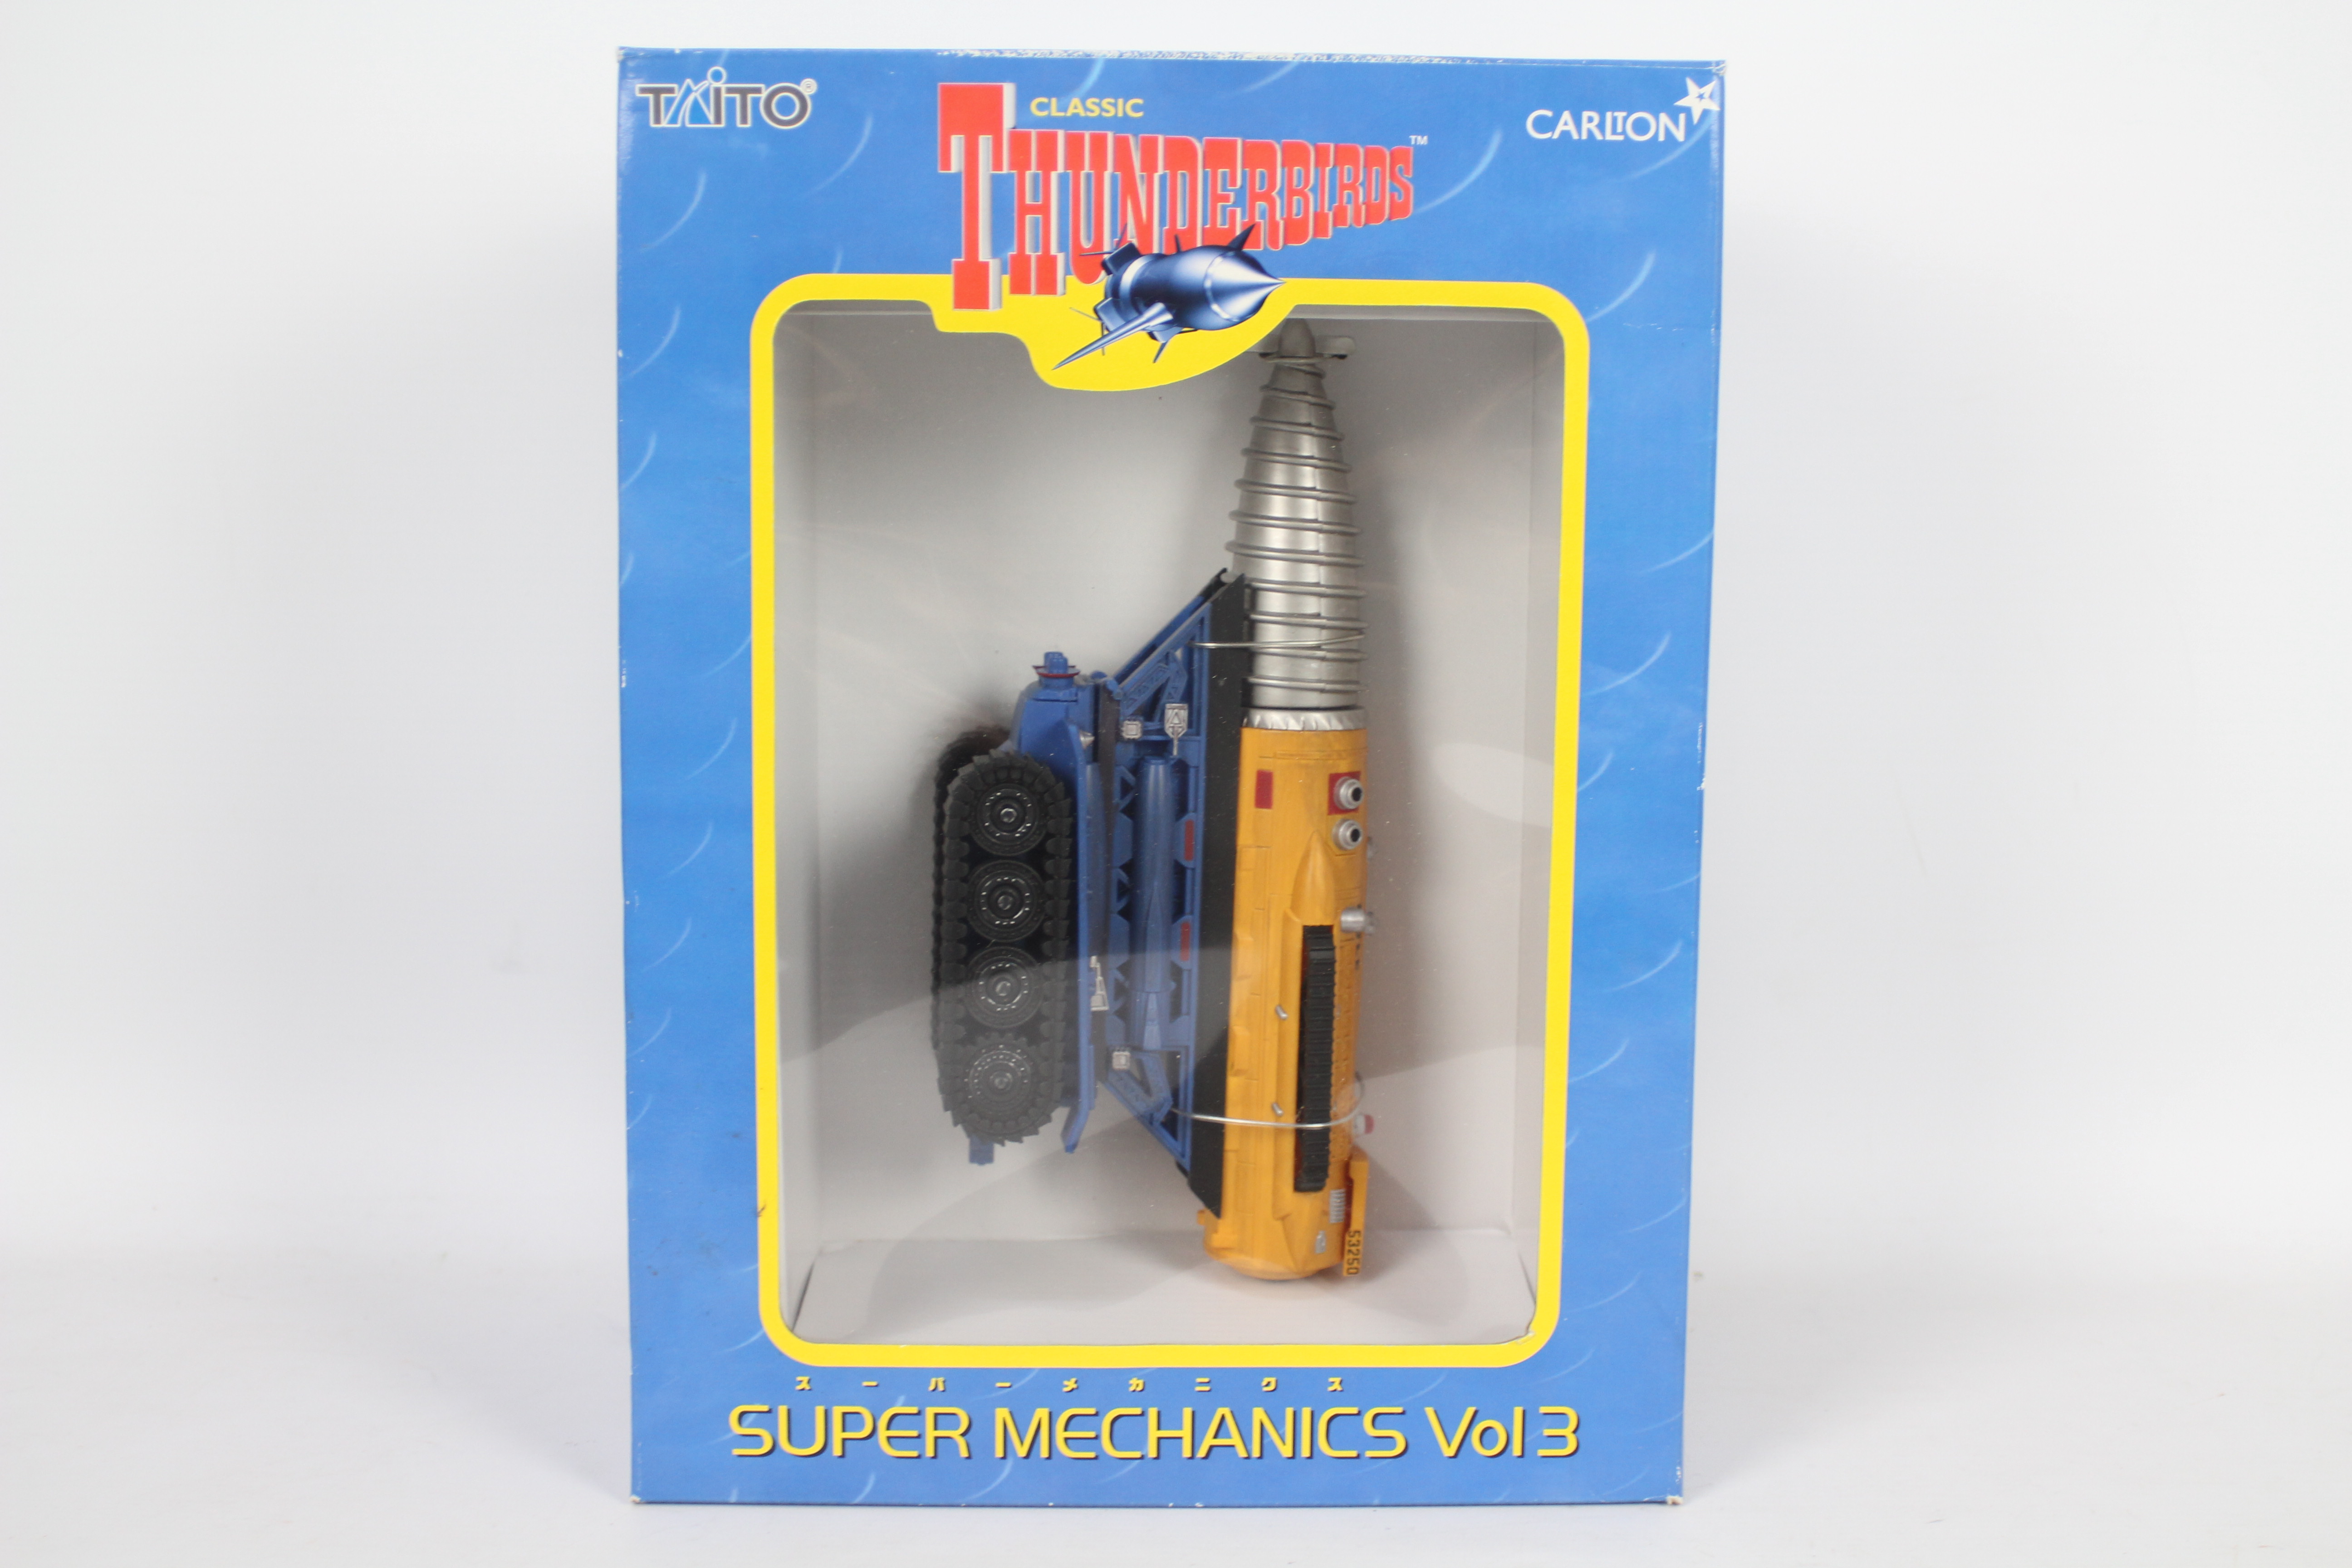 Taito - A boxed Taito Thunderbirds Super Mechanics Vol 3 'The Mole'.